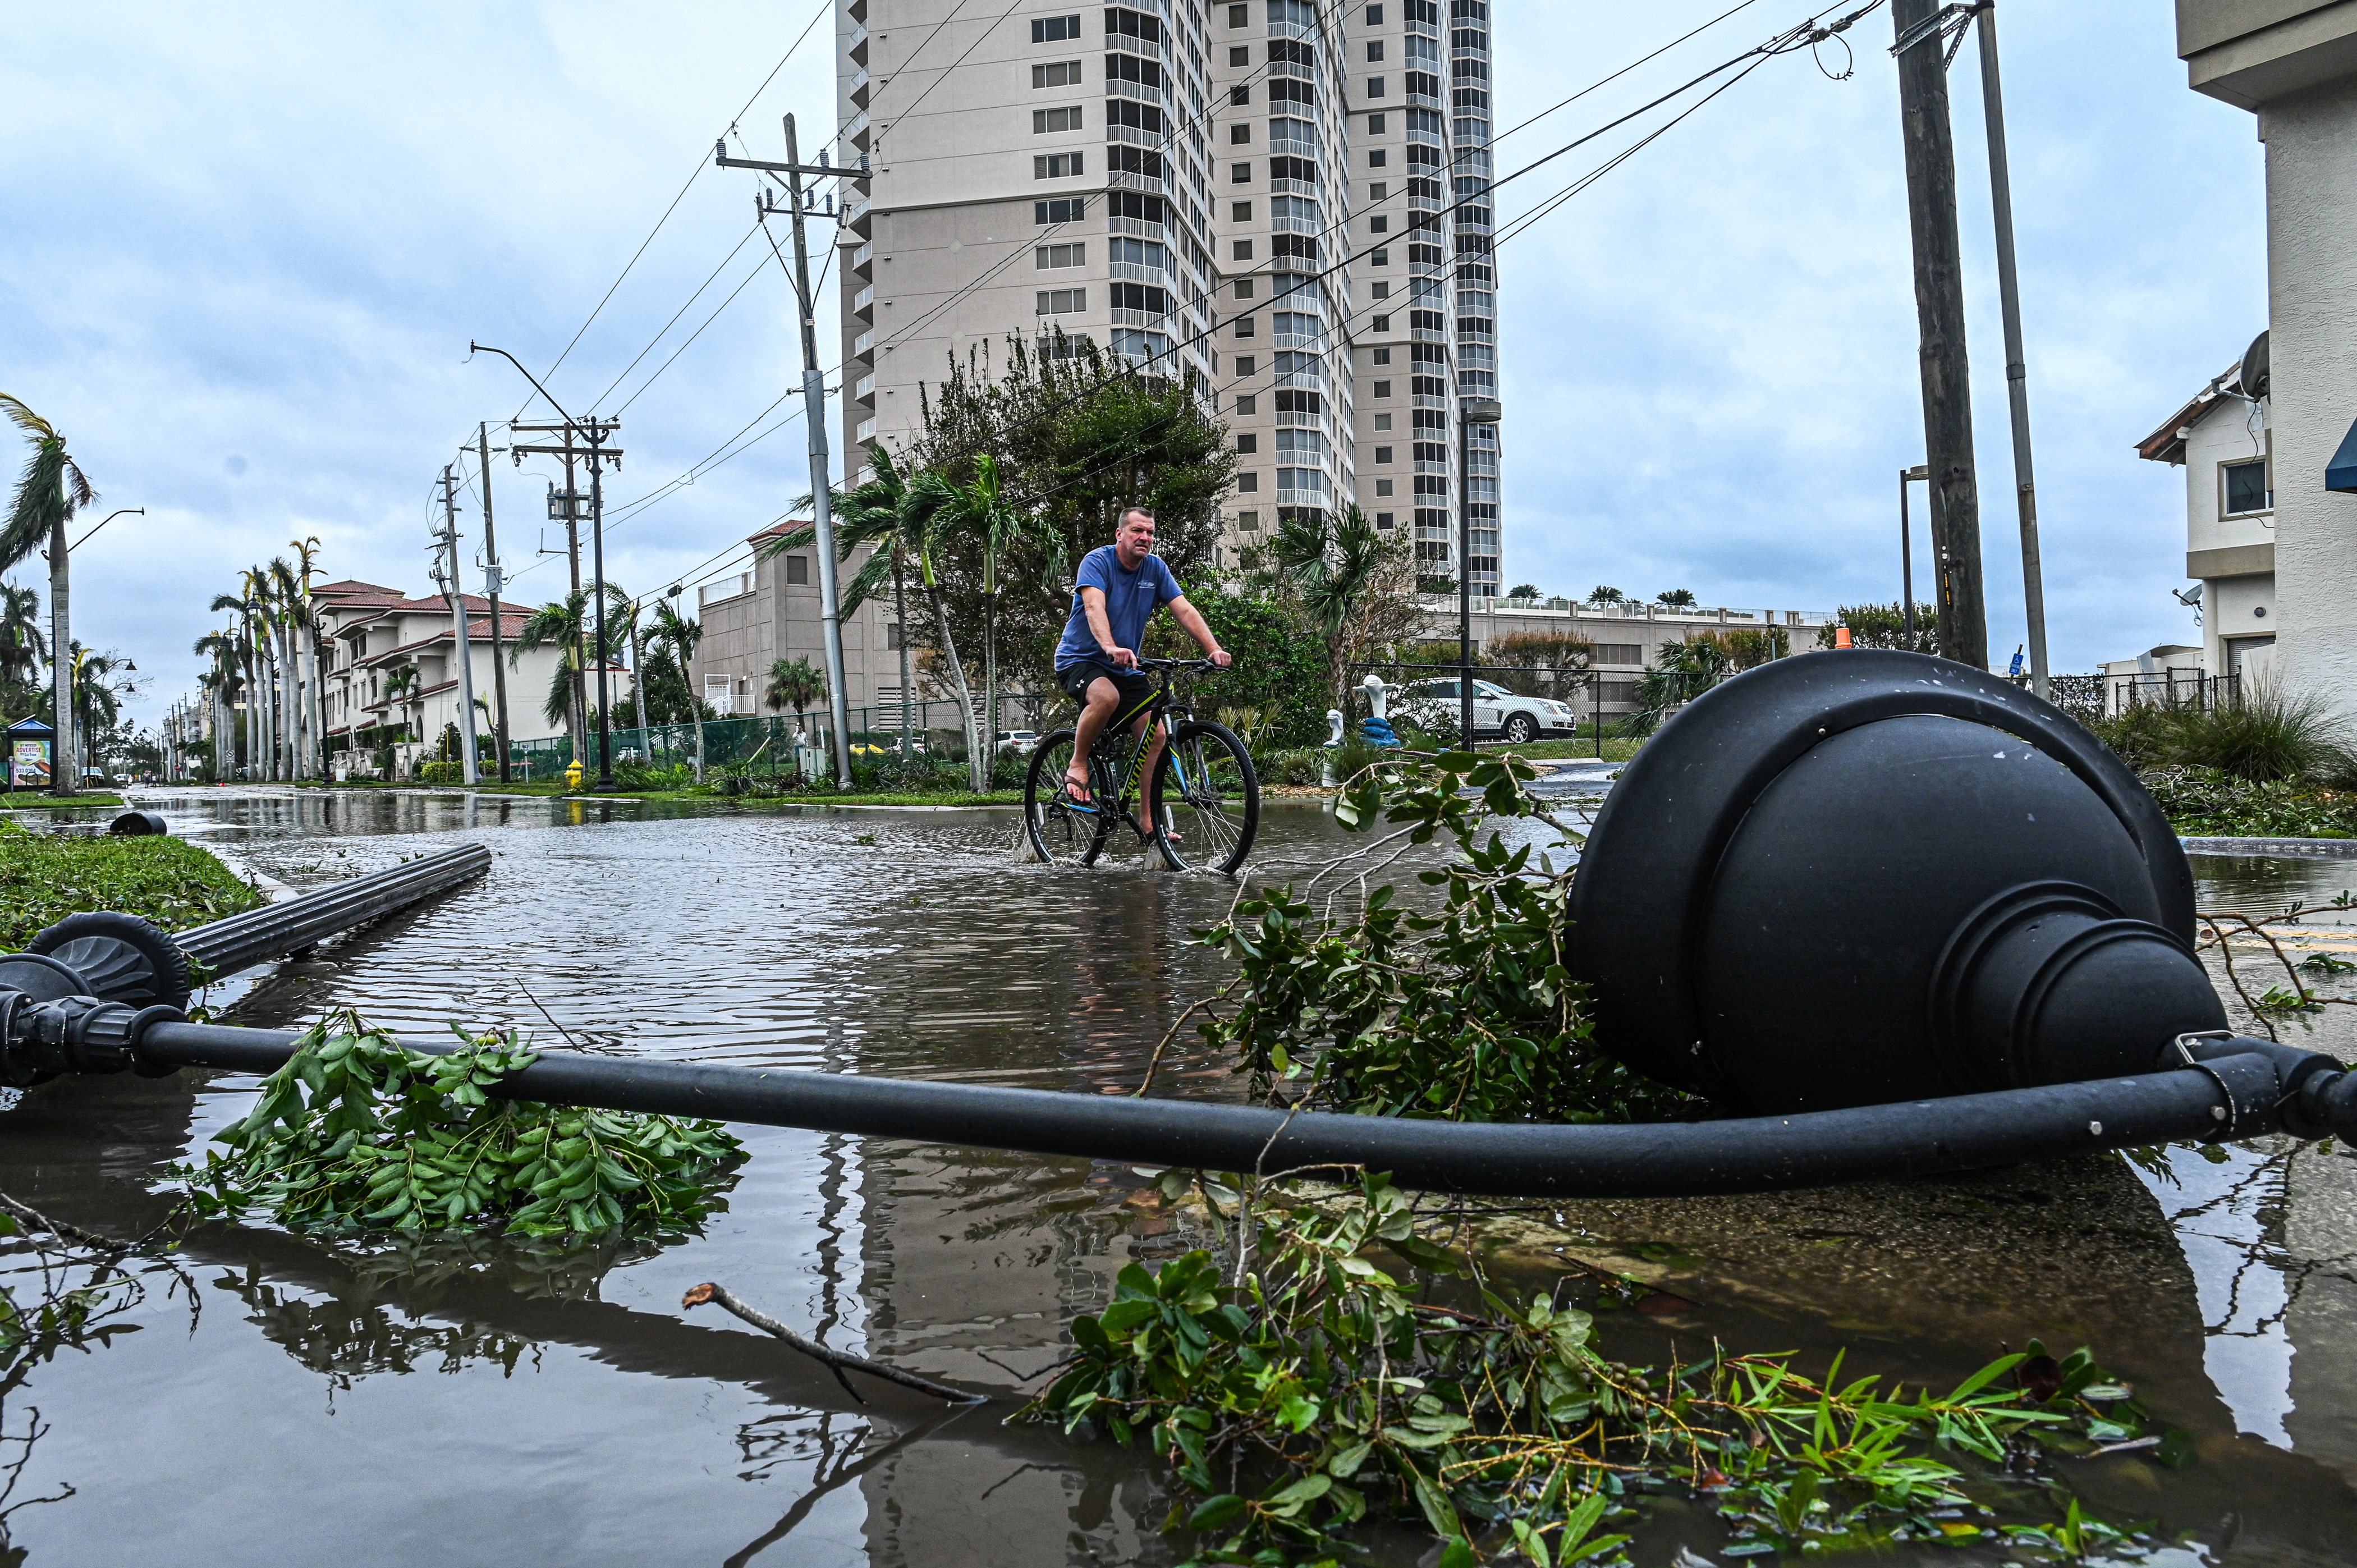 Un hombre pasa una farola caída mientras anda en bicicleta por el agua después del huracán Ian en Fort Myers, Florida, el 29 de septiembre de 2022. (Giorgio VIERA / AFP)